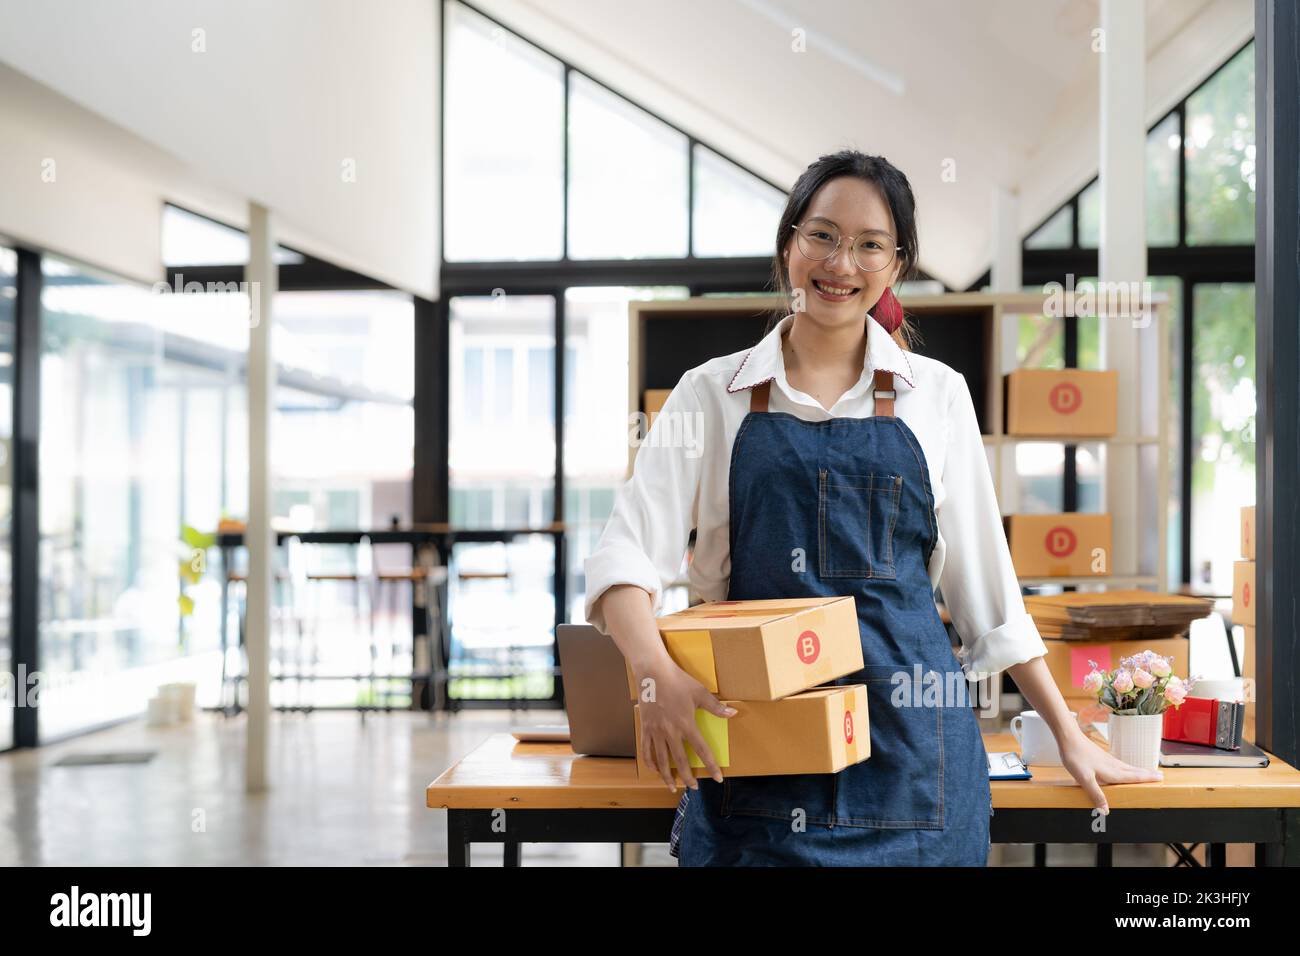 Startup petite entreprise entrepreneur indépendant femme travaillant avec Box, Young asian marché en ligne emballage livraison de boîte, SME livraison e-commerce Banque D'Images